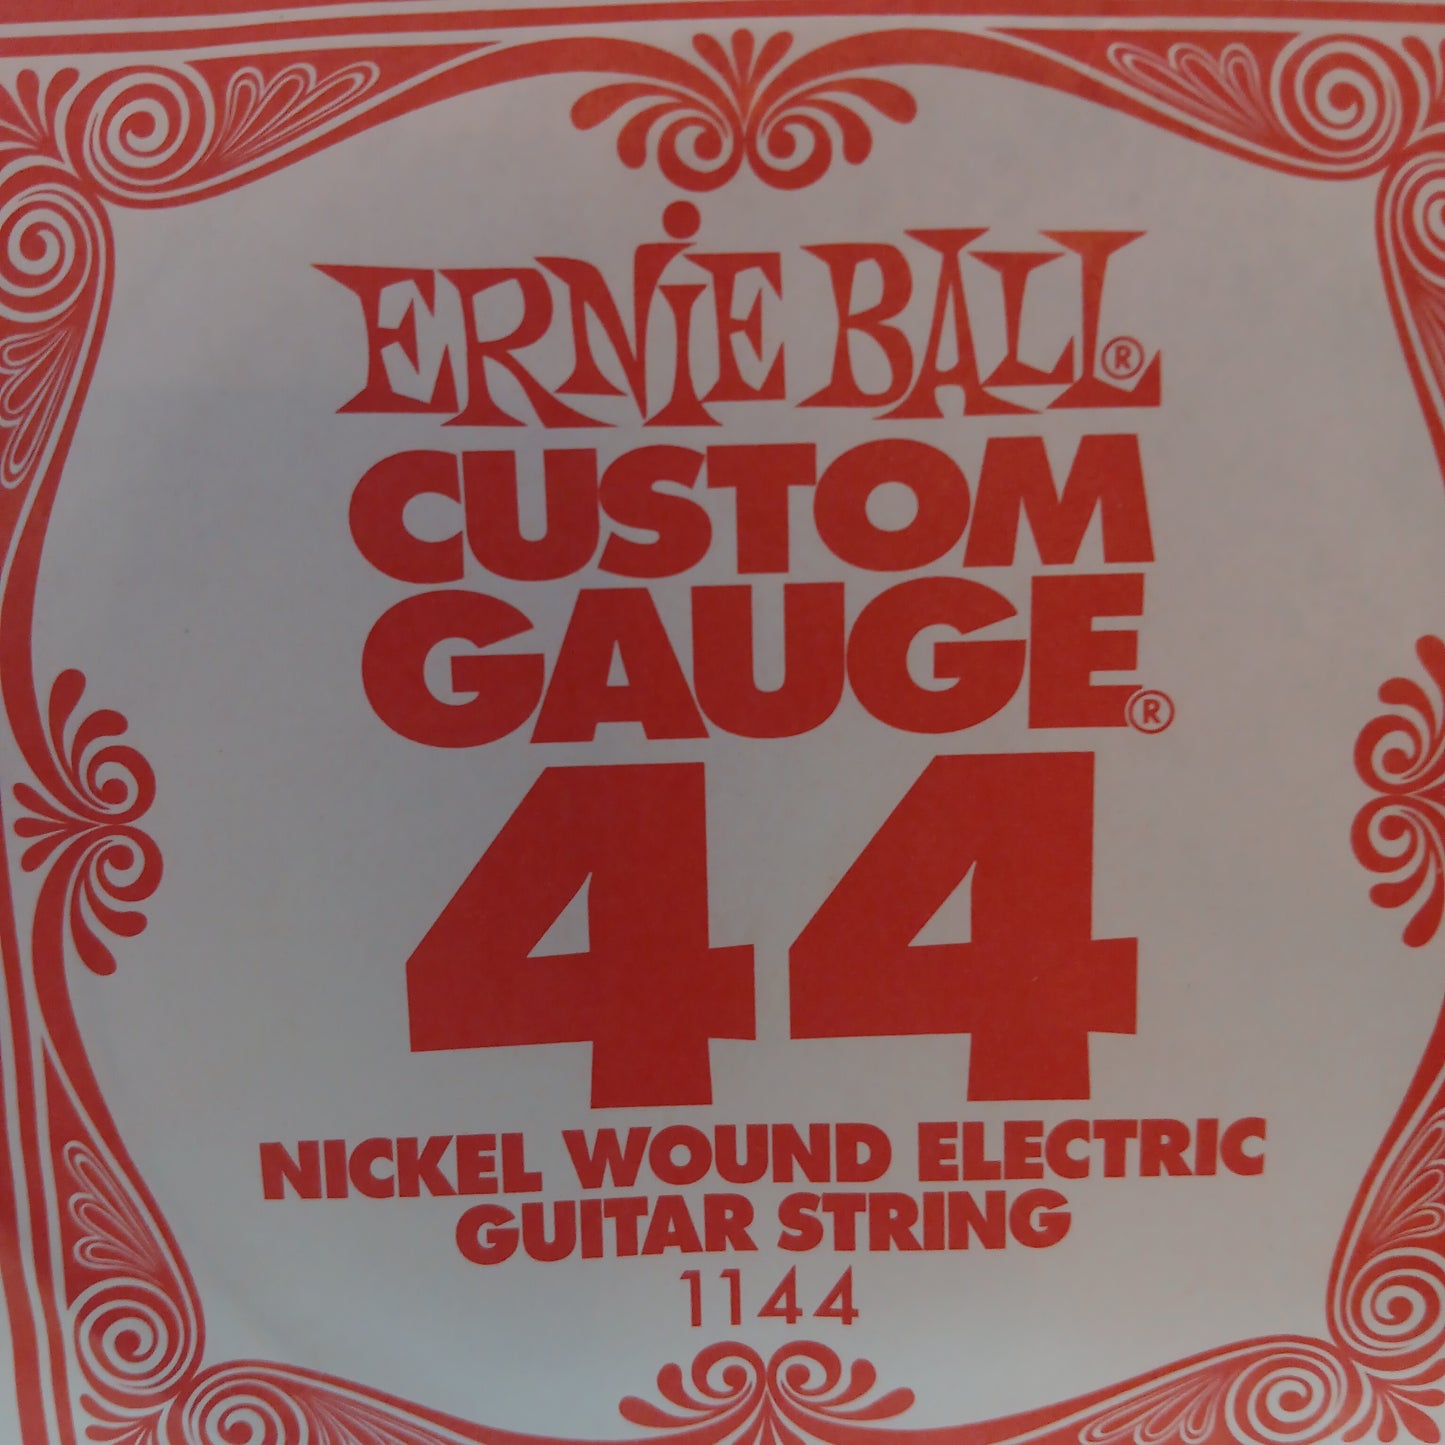 Ernie Ball Custom Gauge Nickel Wound Single Strings 1144/44
Gauge